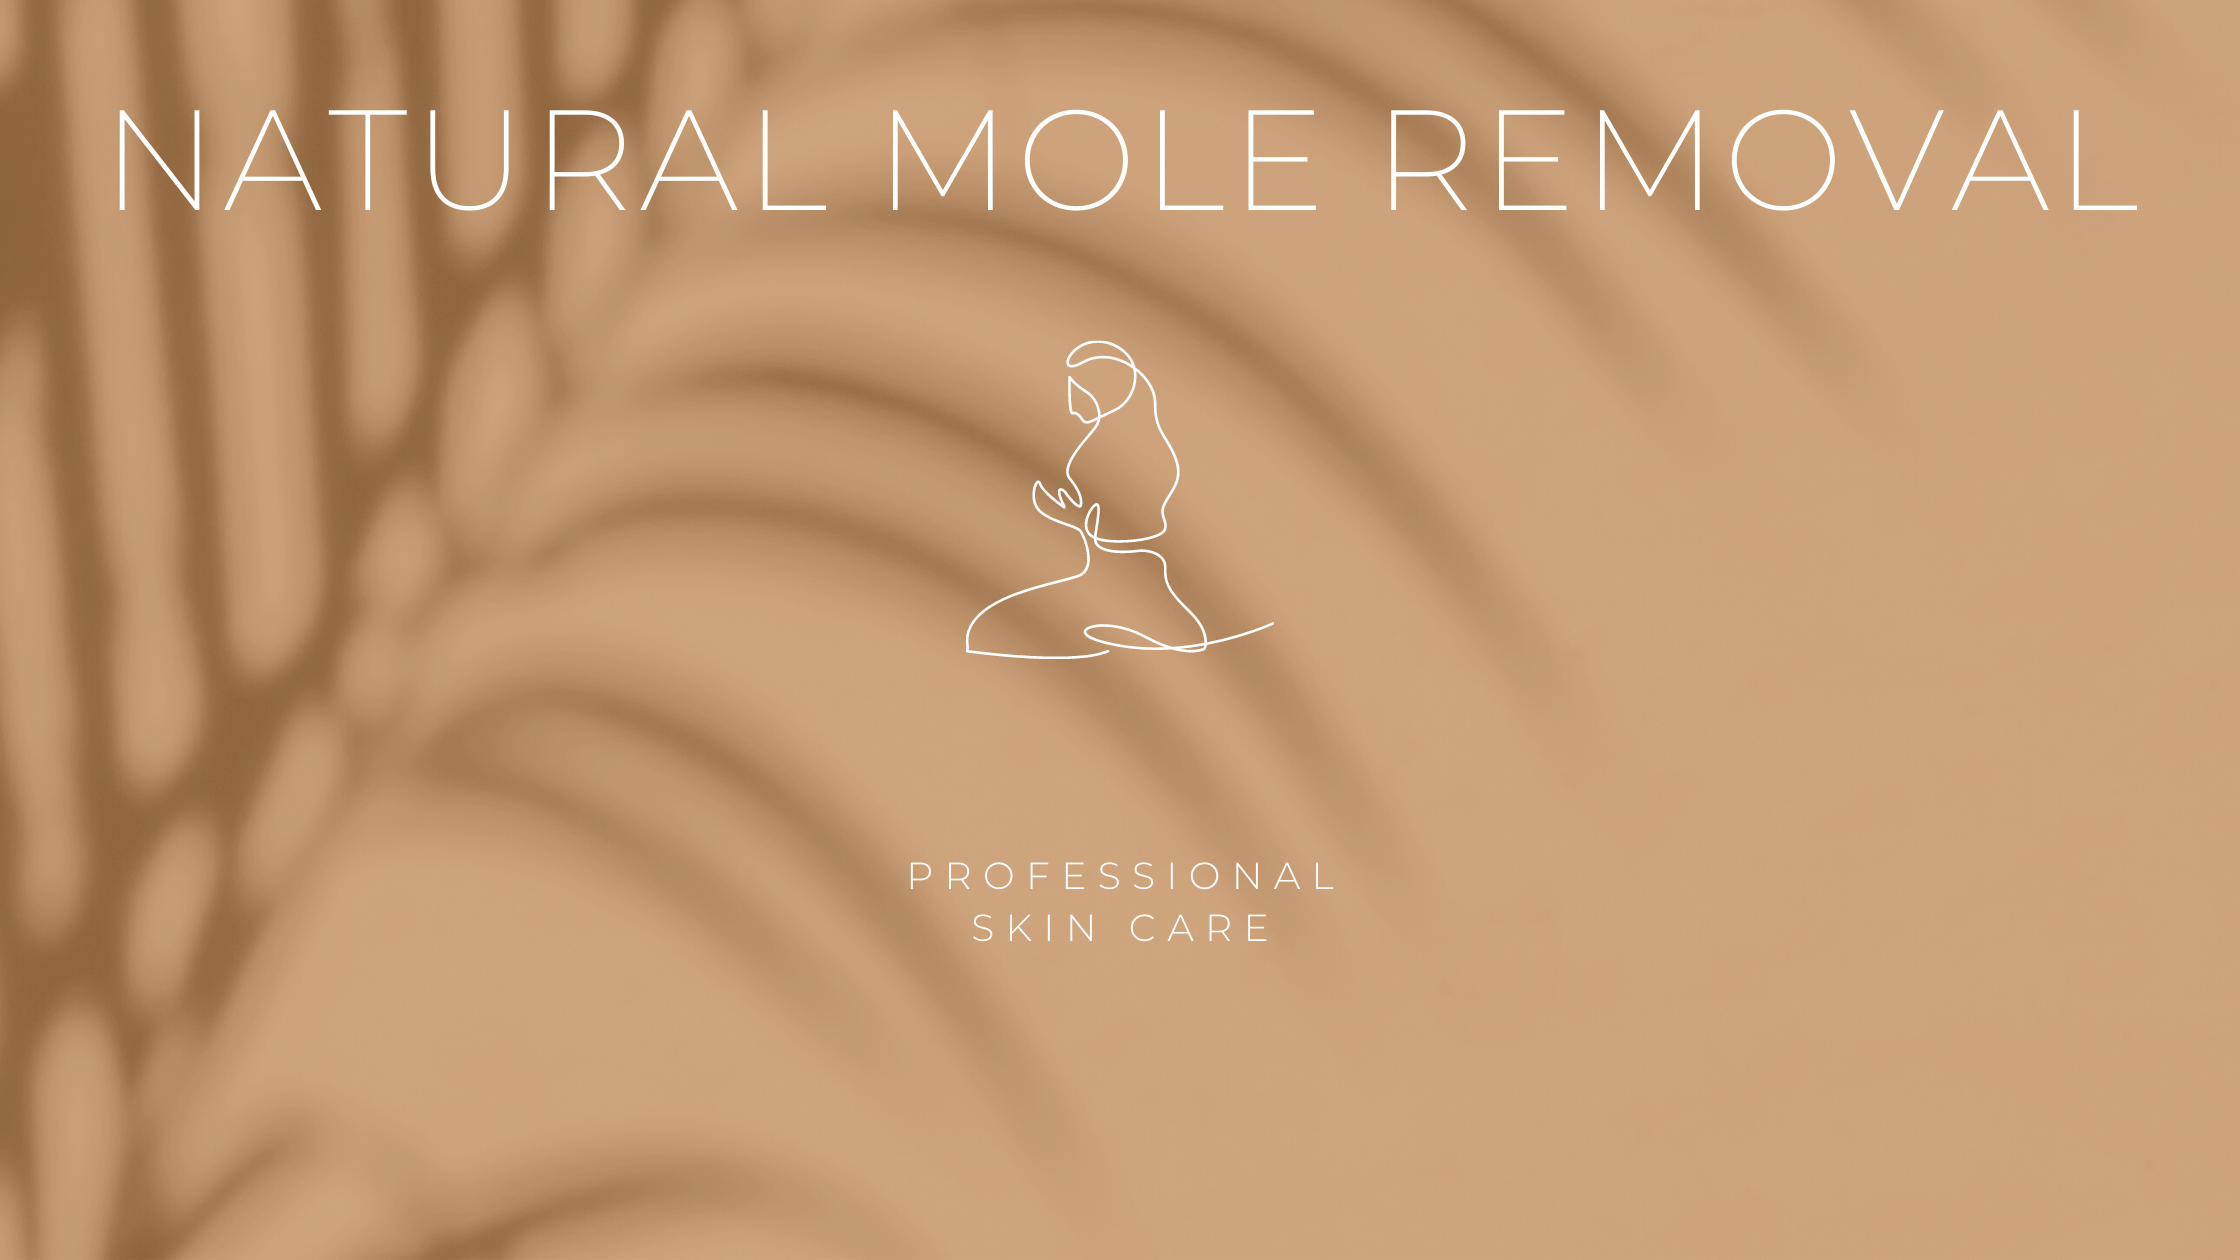 Natural Mole Removal